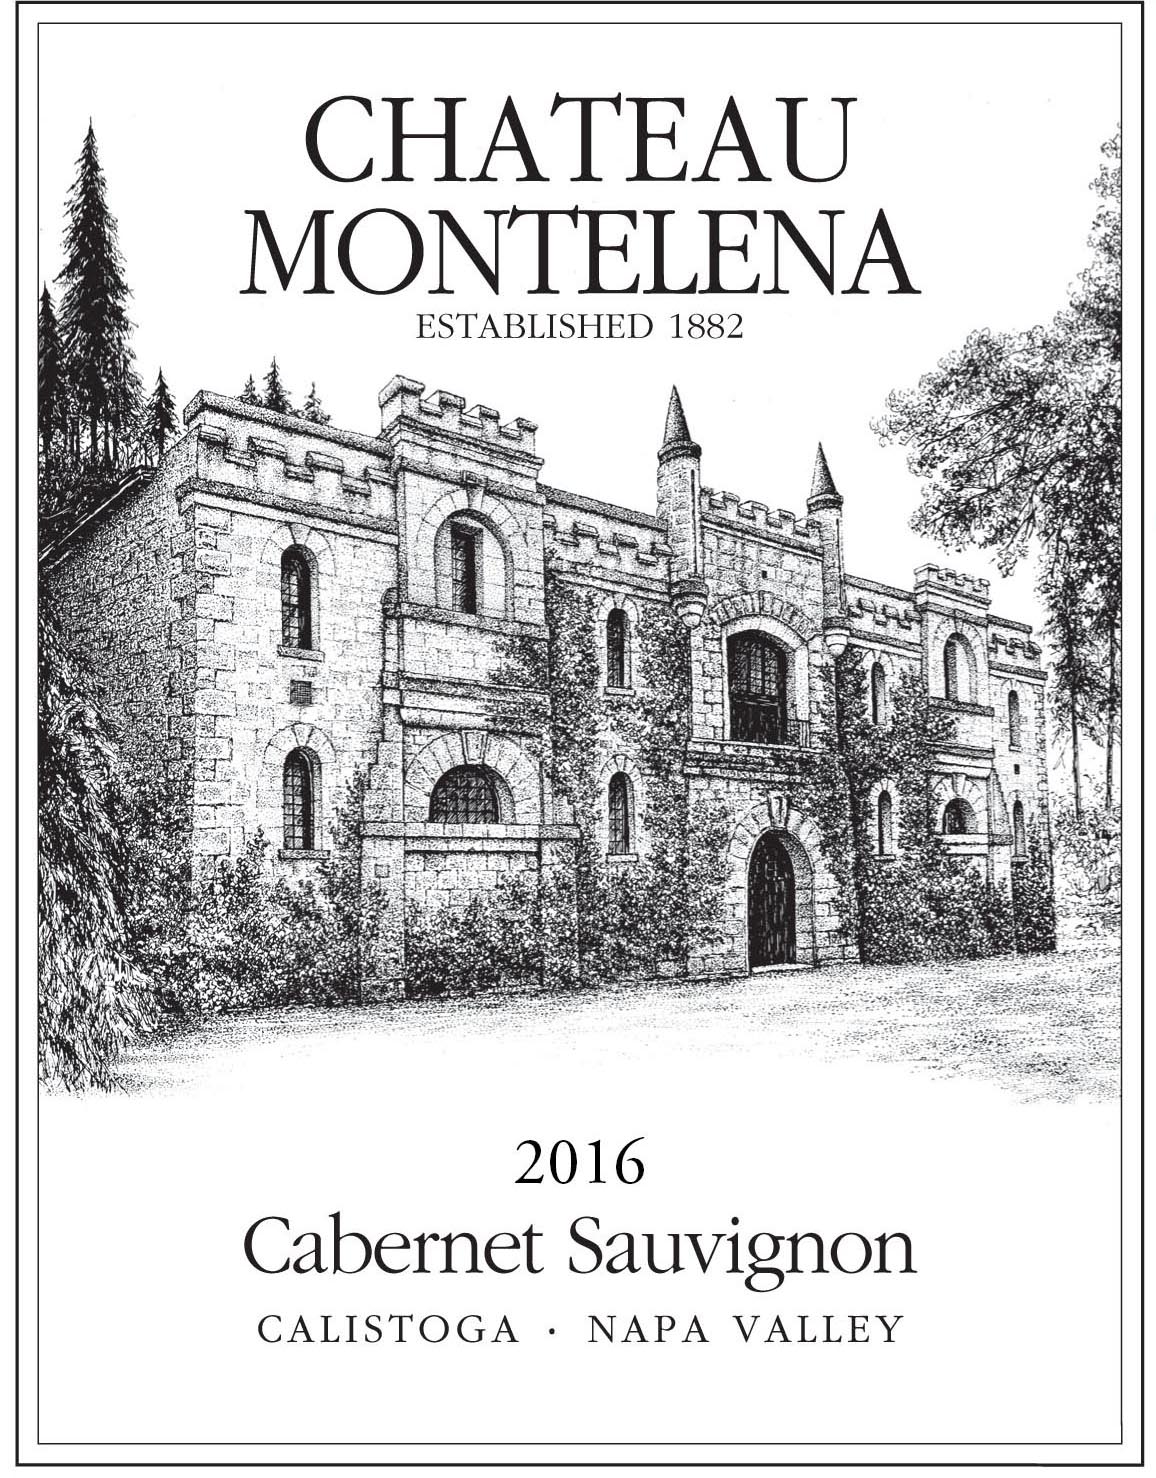 Chateau Montelena - Cabernet Sauvignon label